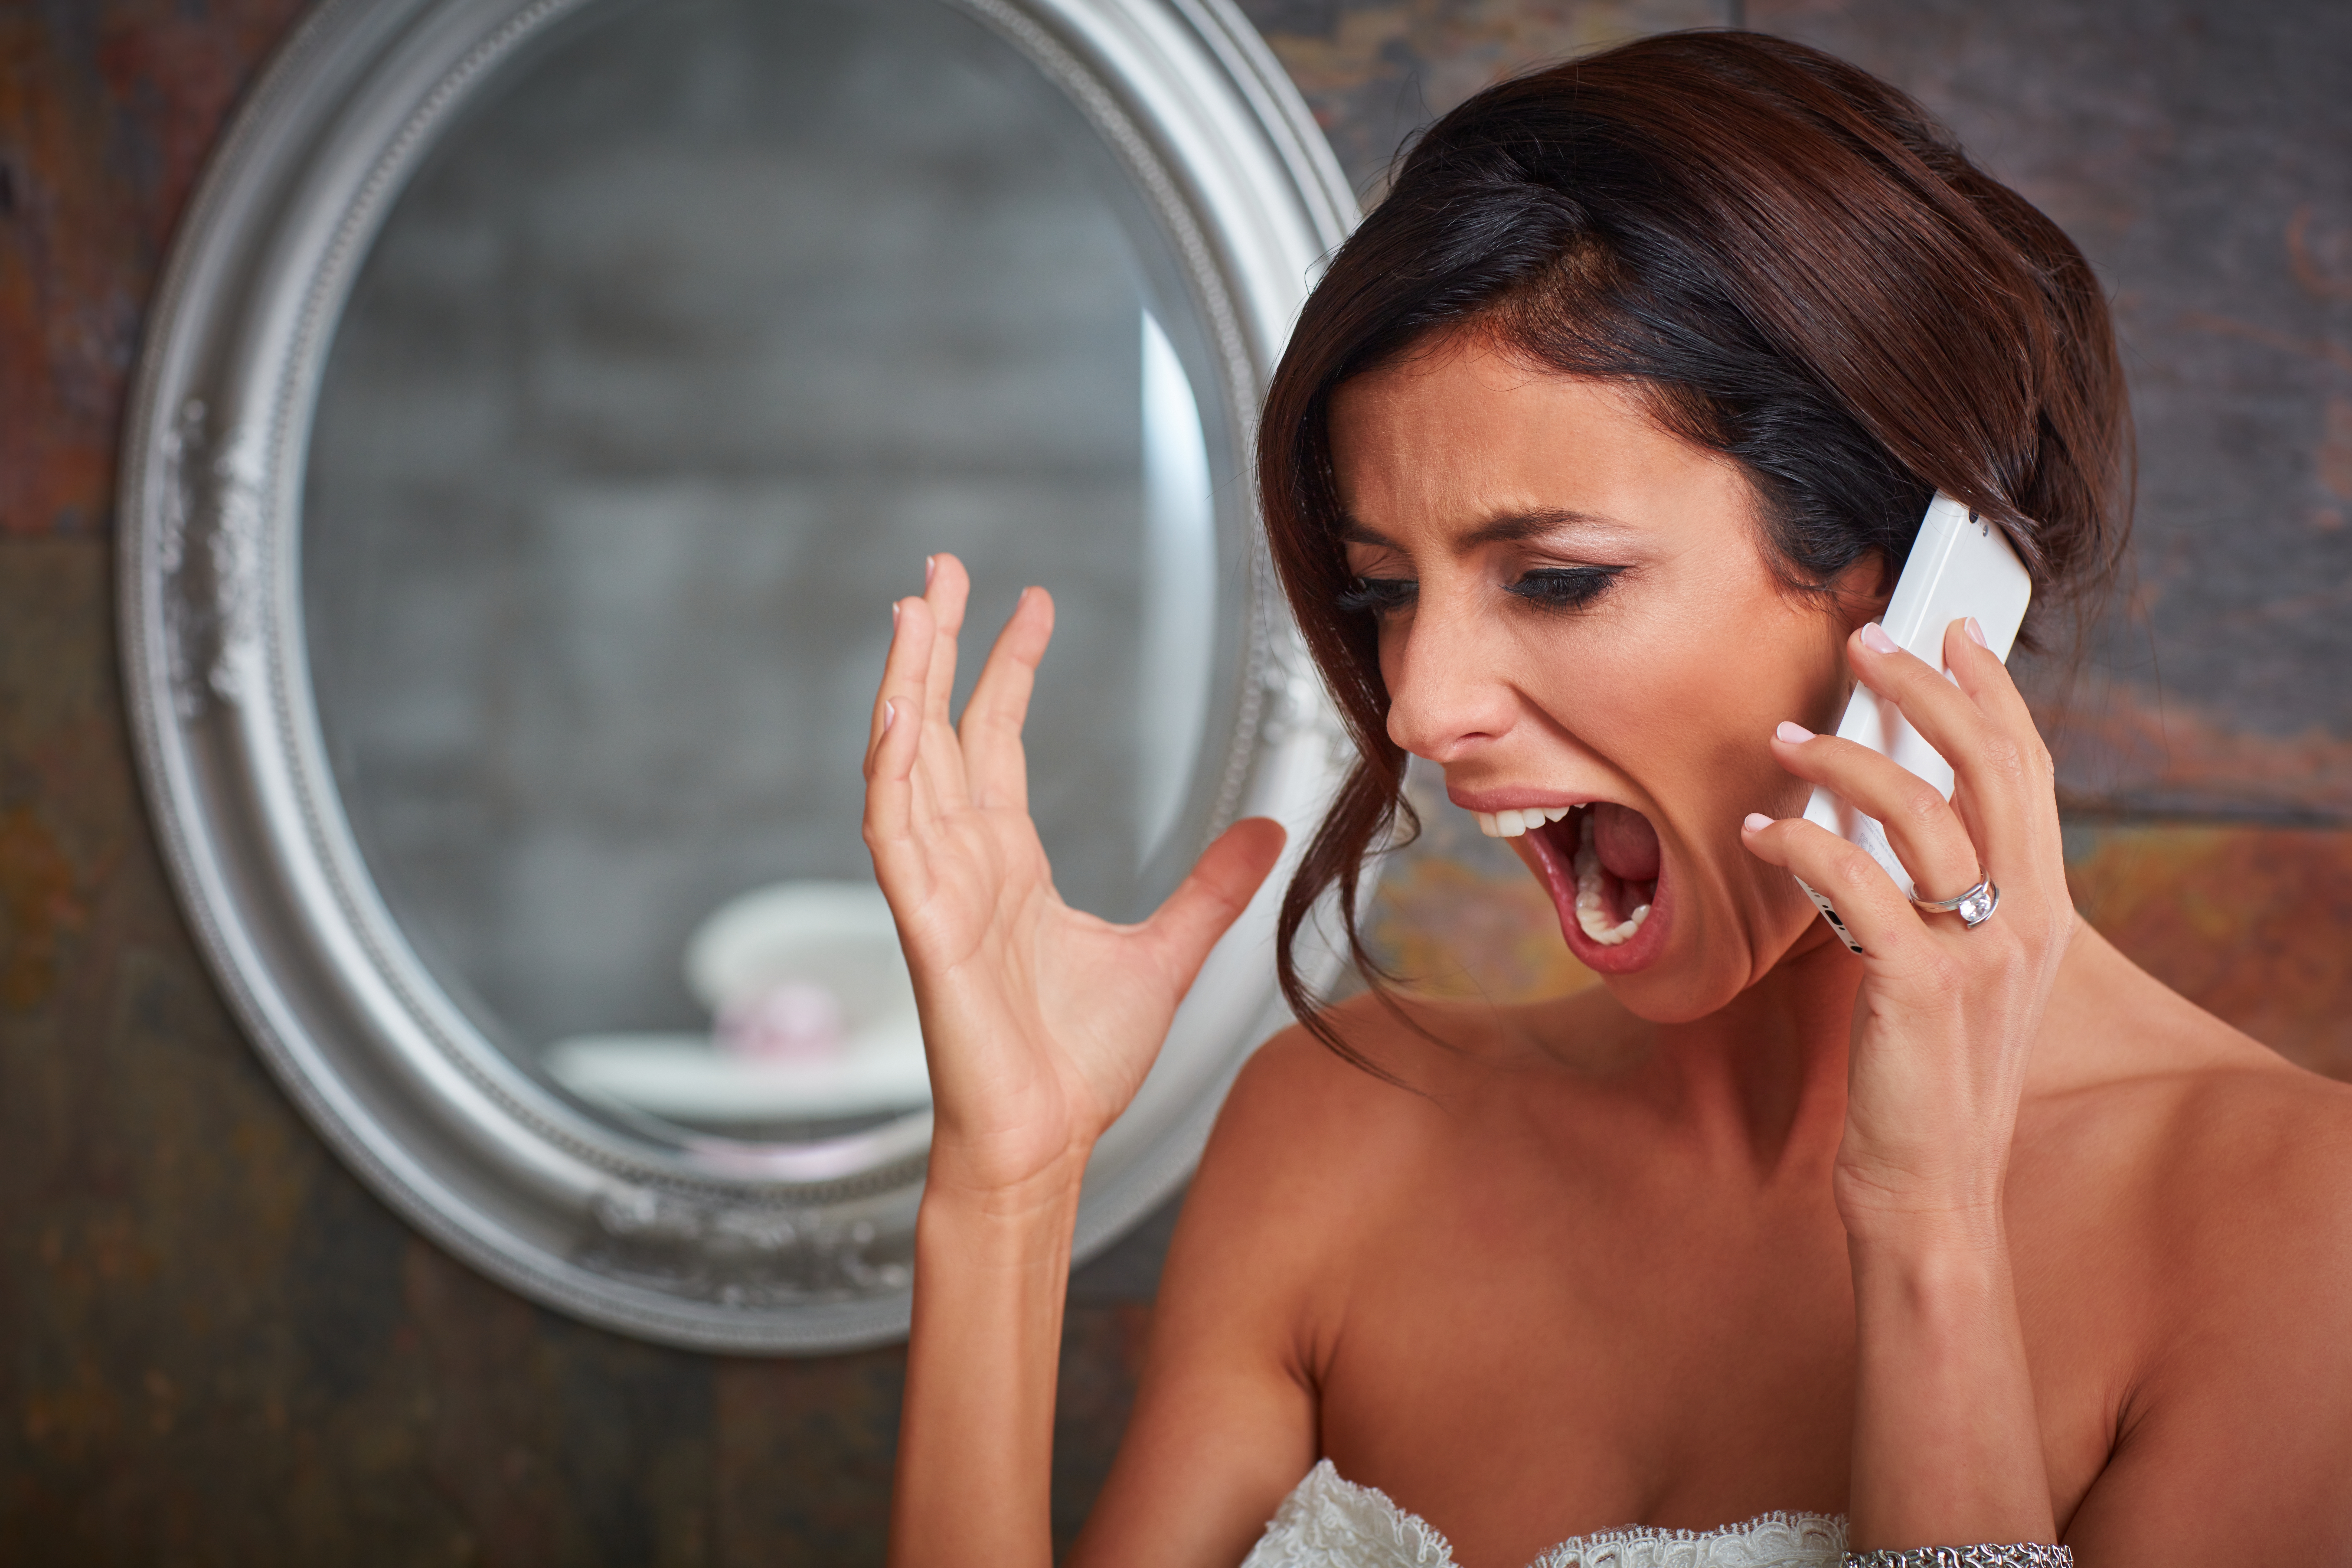 Une mariée qui crie tout en parlant au téléphone | Source : Shutterstock